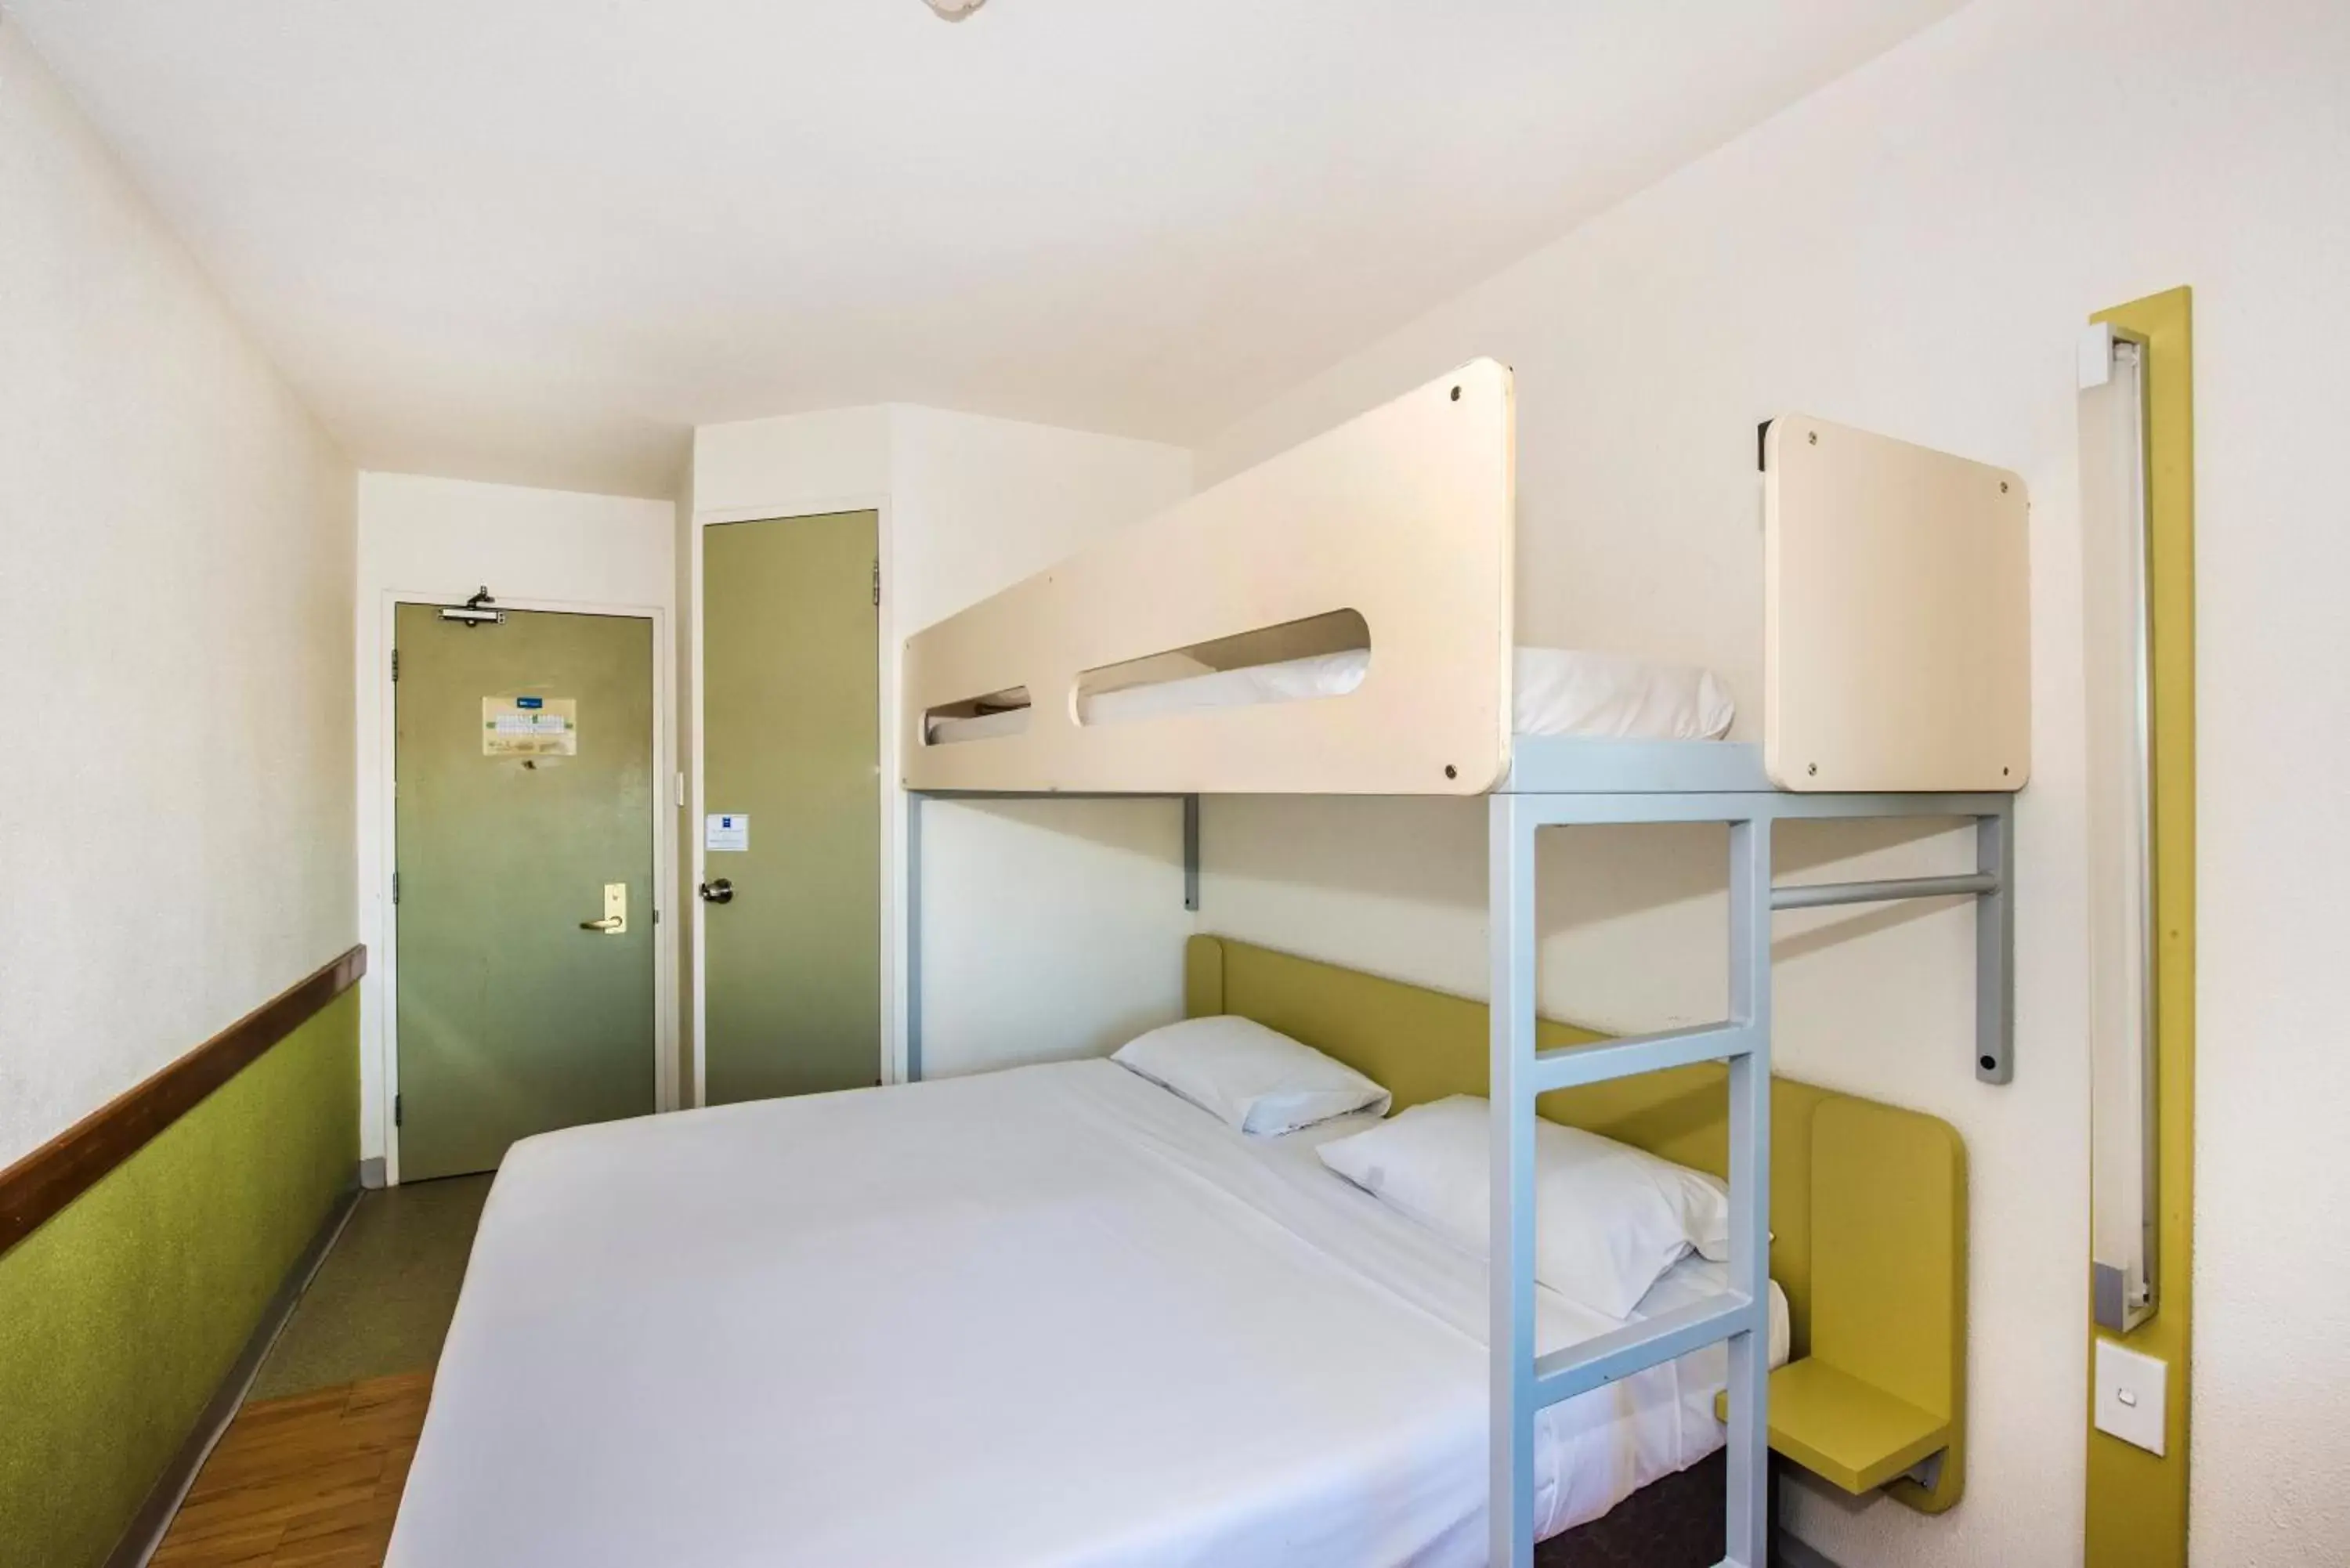 Bedroom, Bunk Bed in ibis Budget - Campbelltown